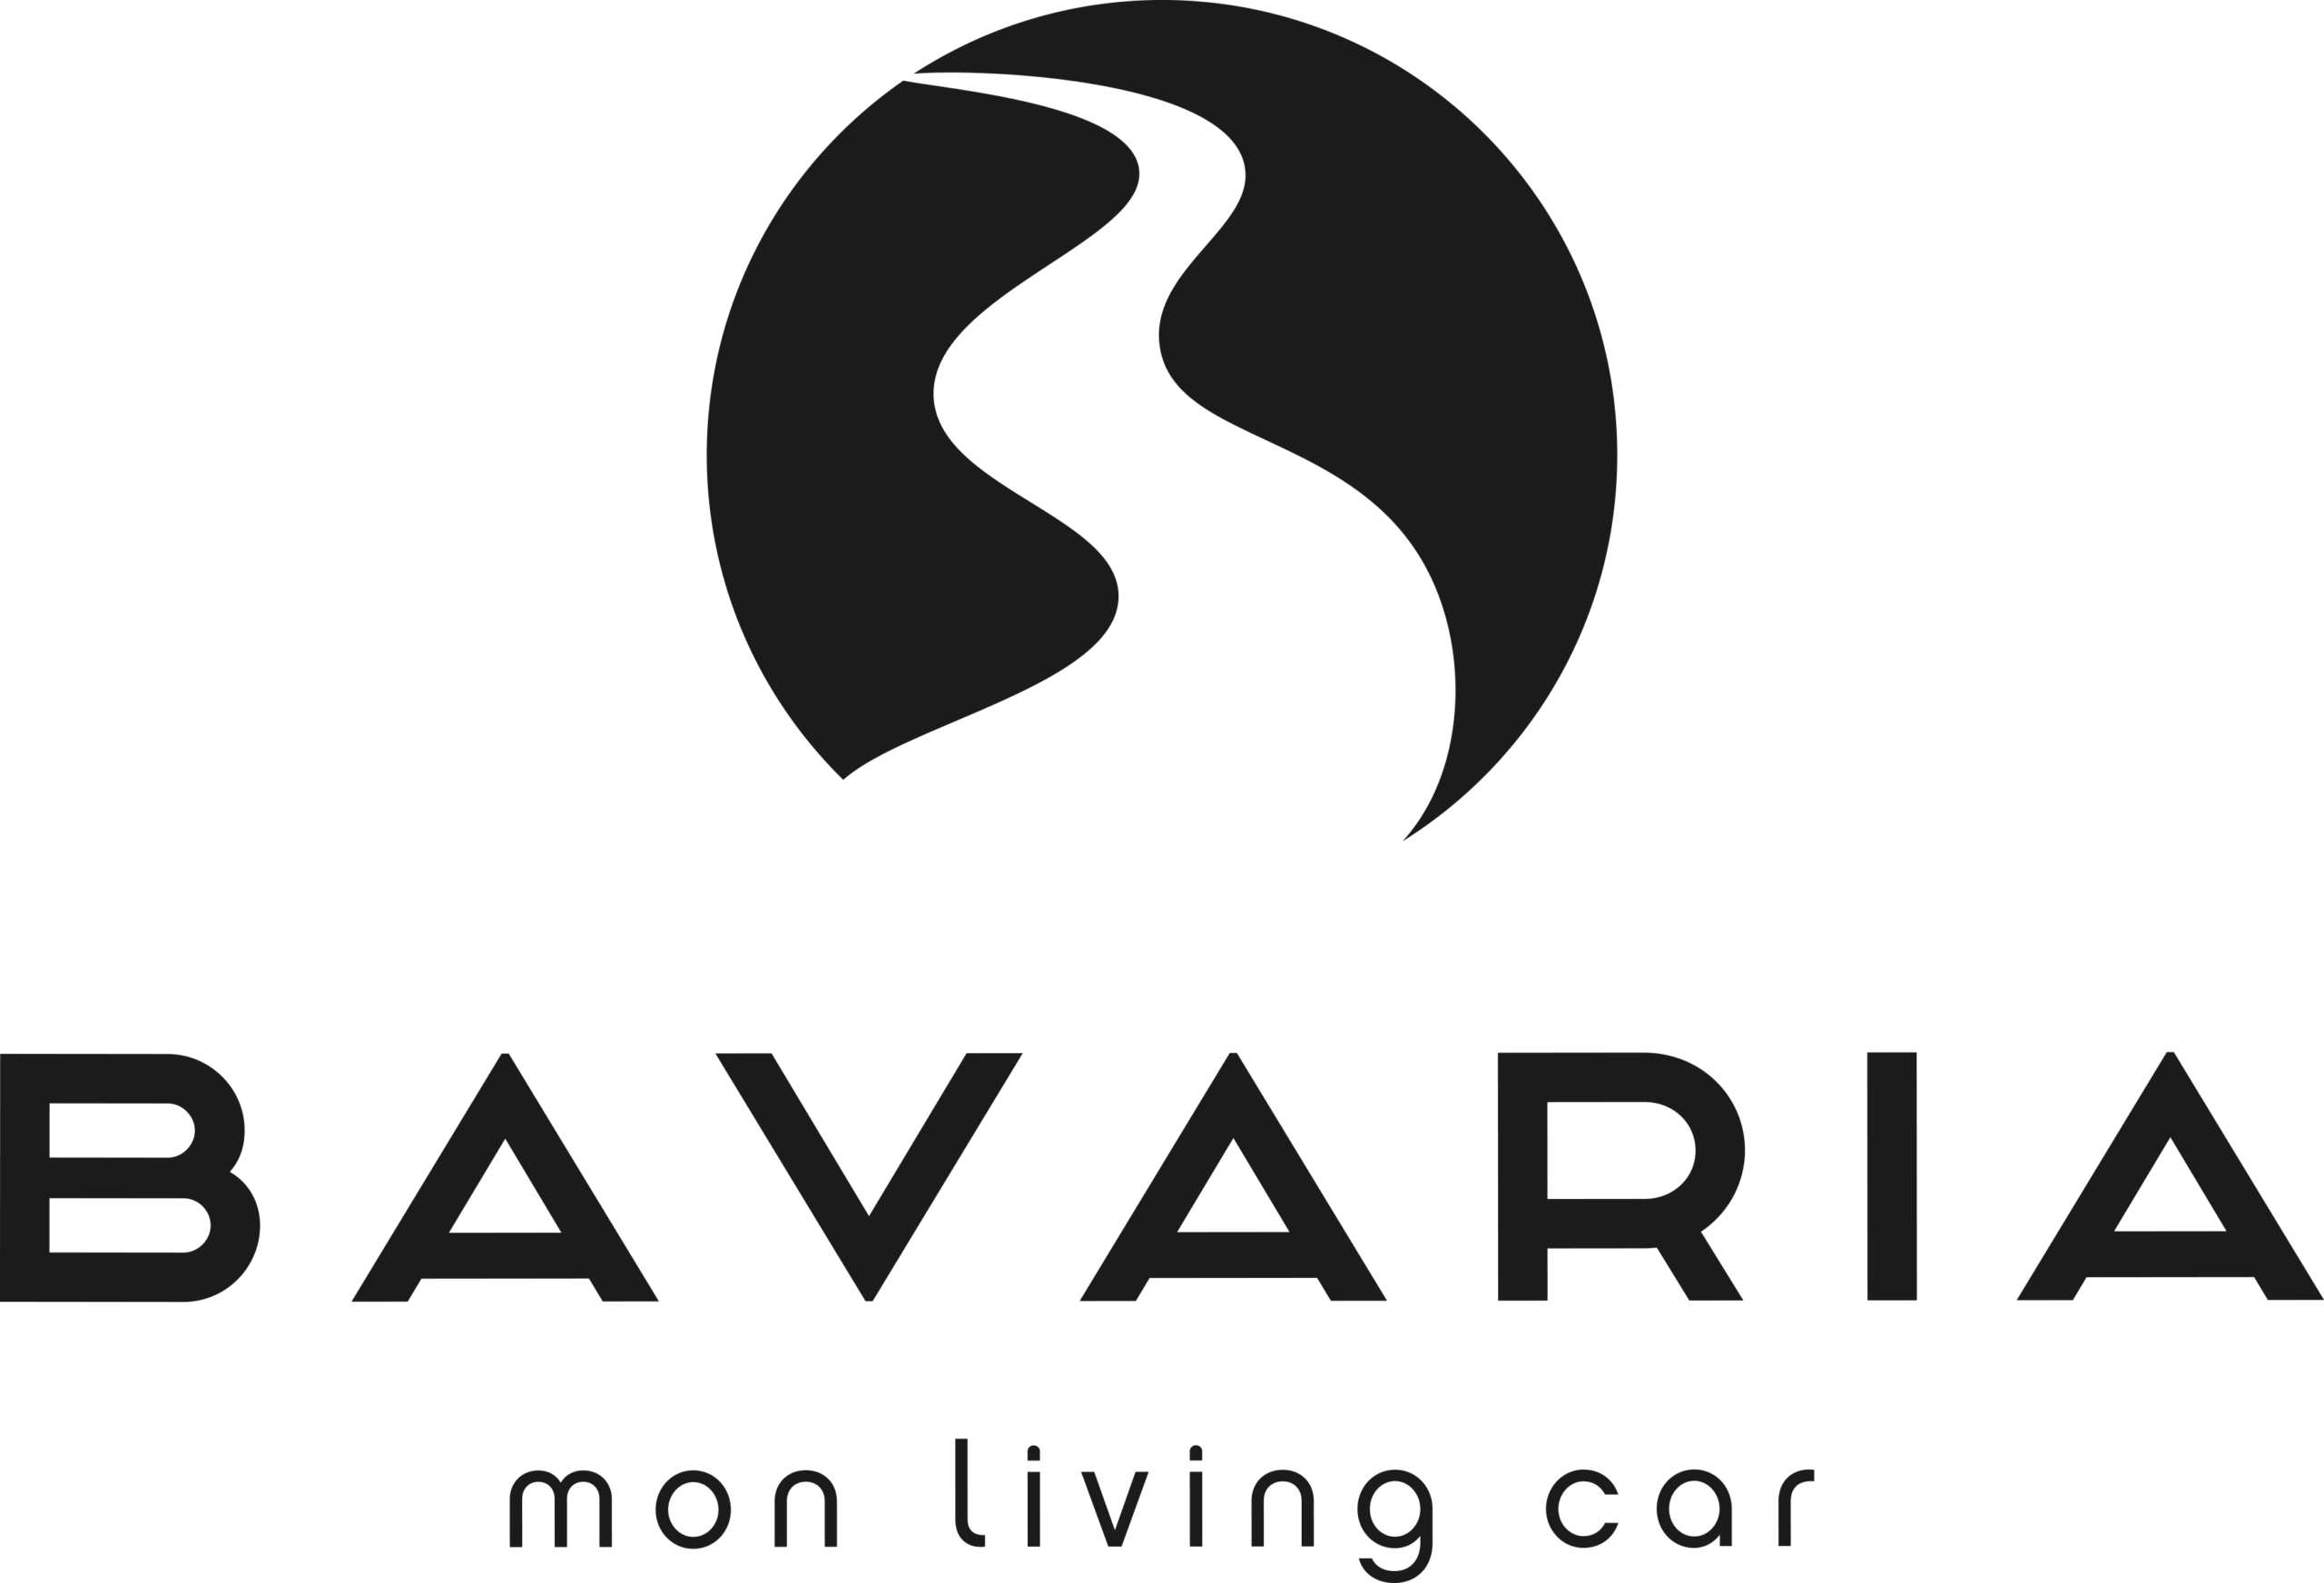 logo_bavaria